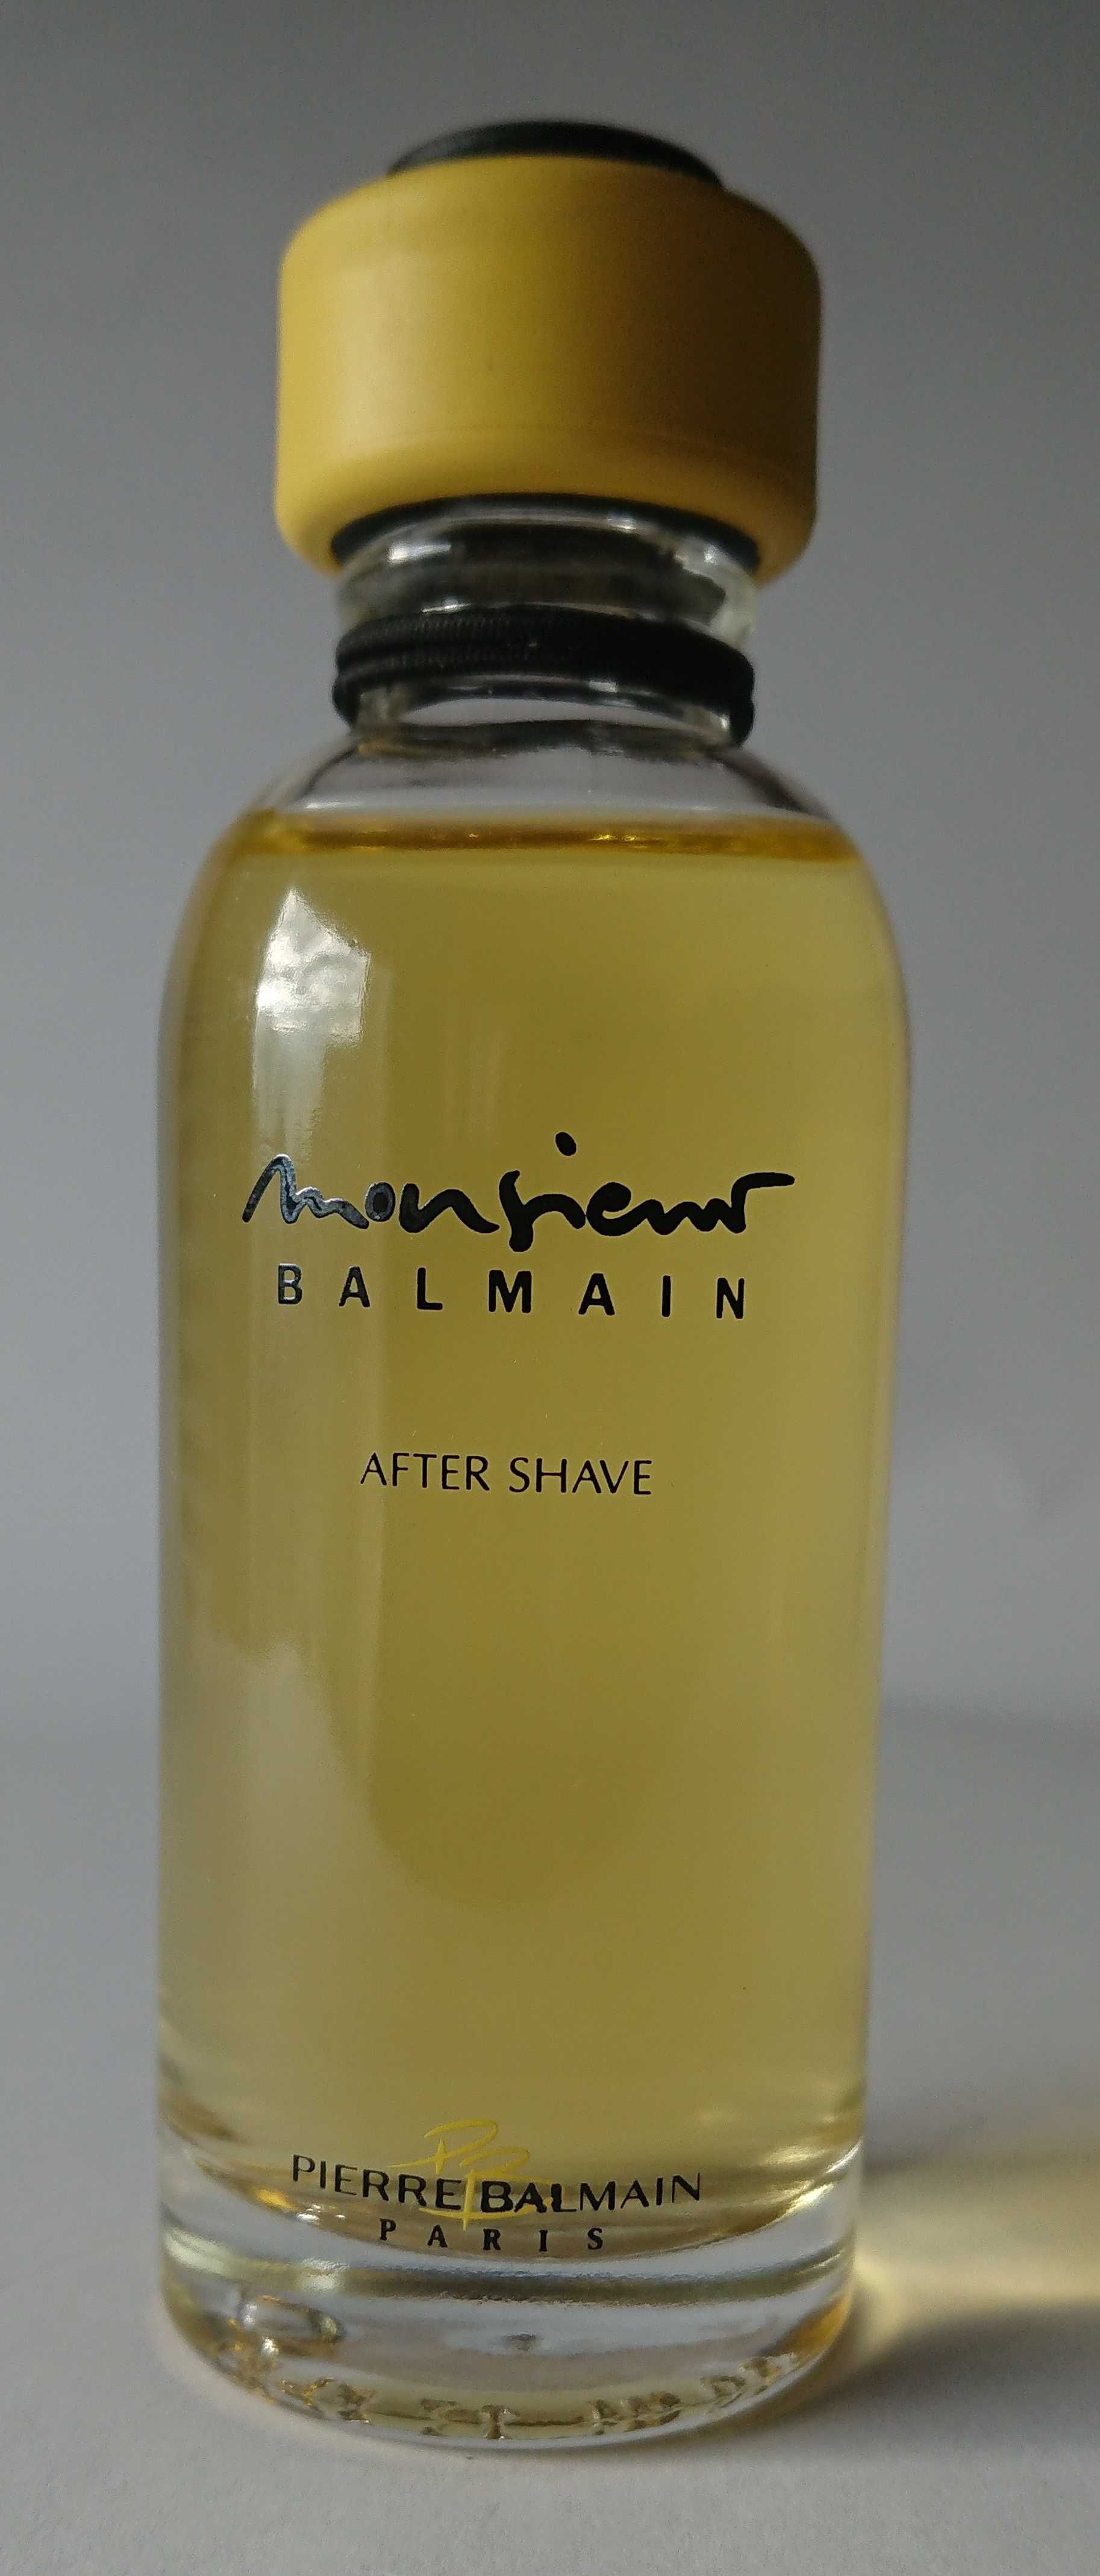 Balmain Monsieur Balmain: woda po goleniu (49/50)+dezodorant (149/150)